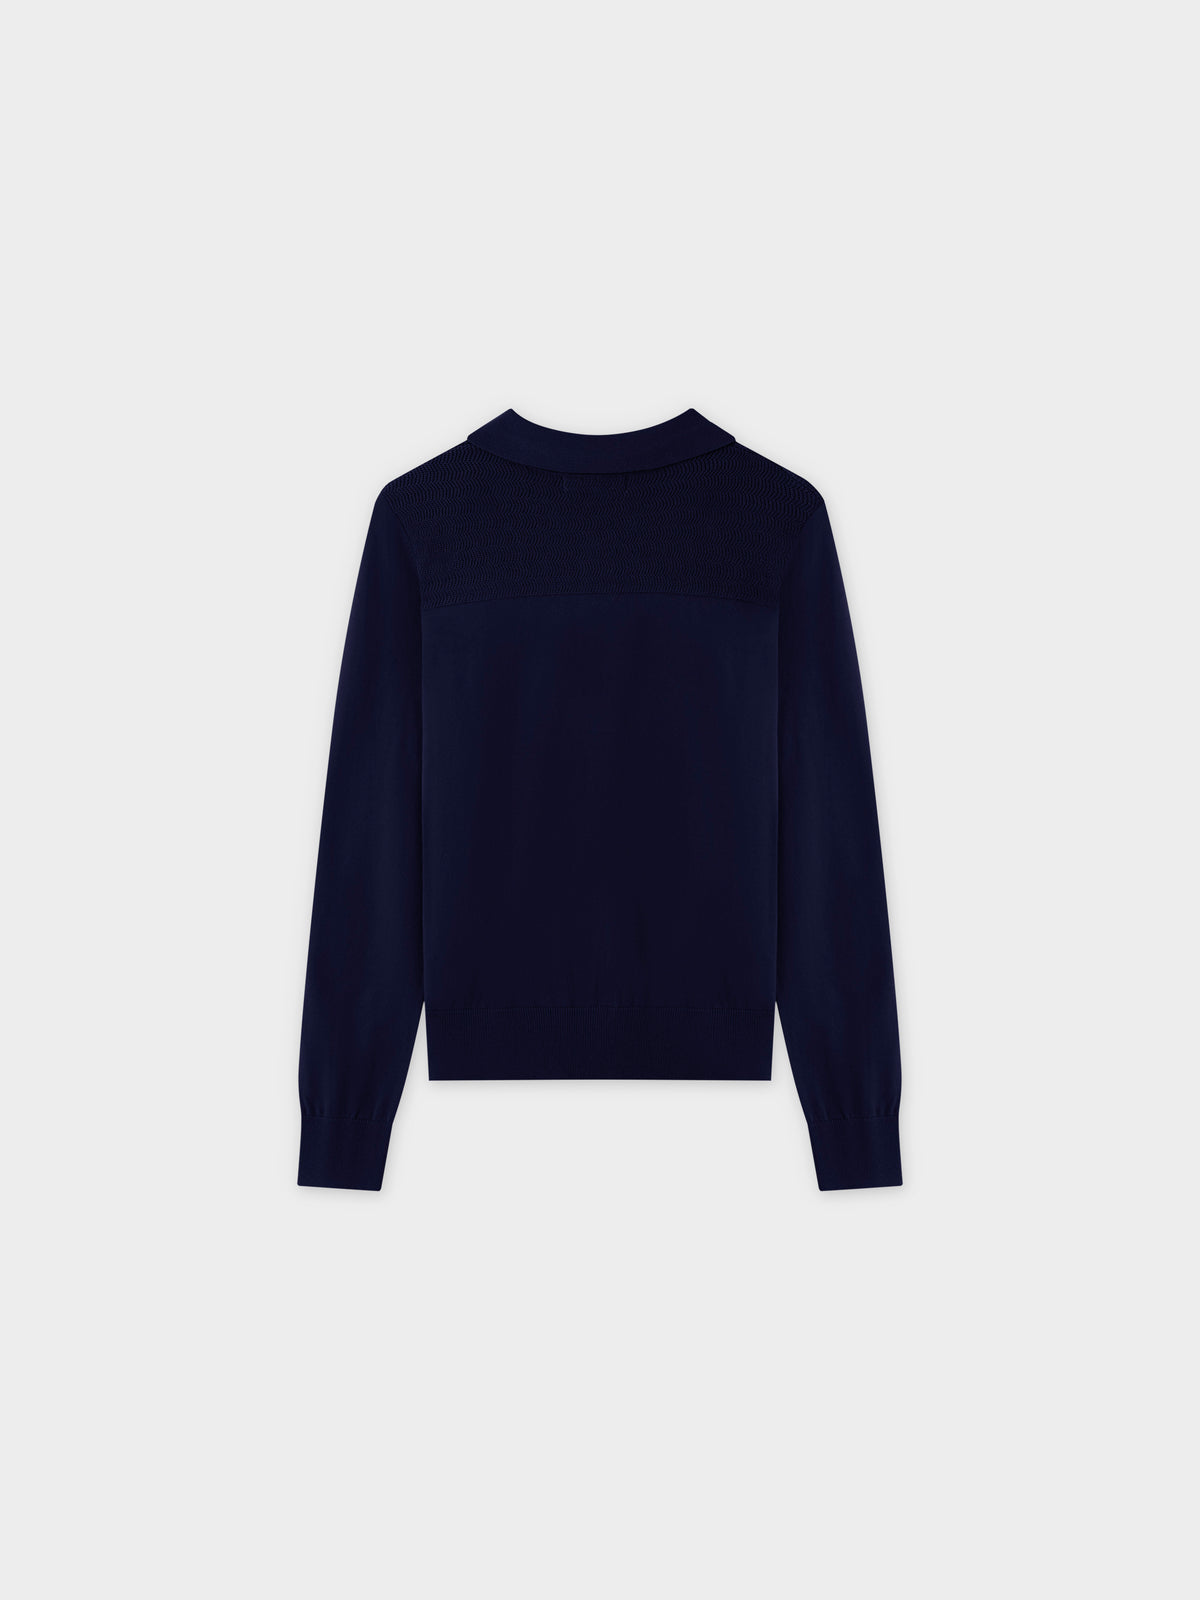 Mesh Top Sweater-Navy